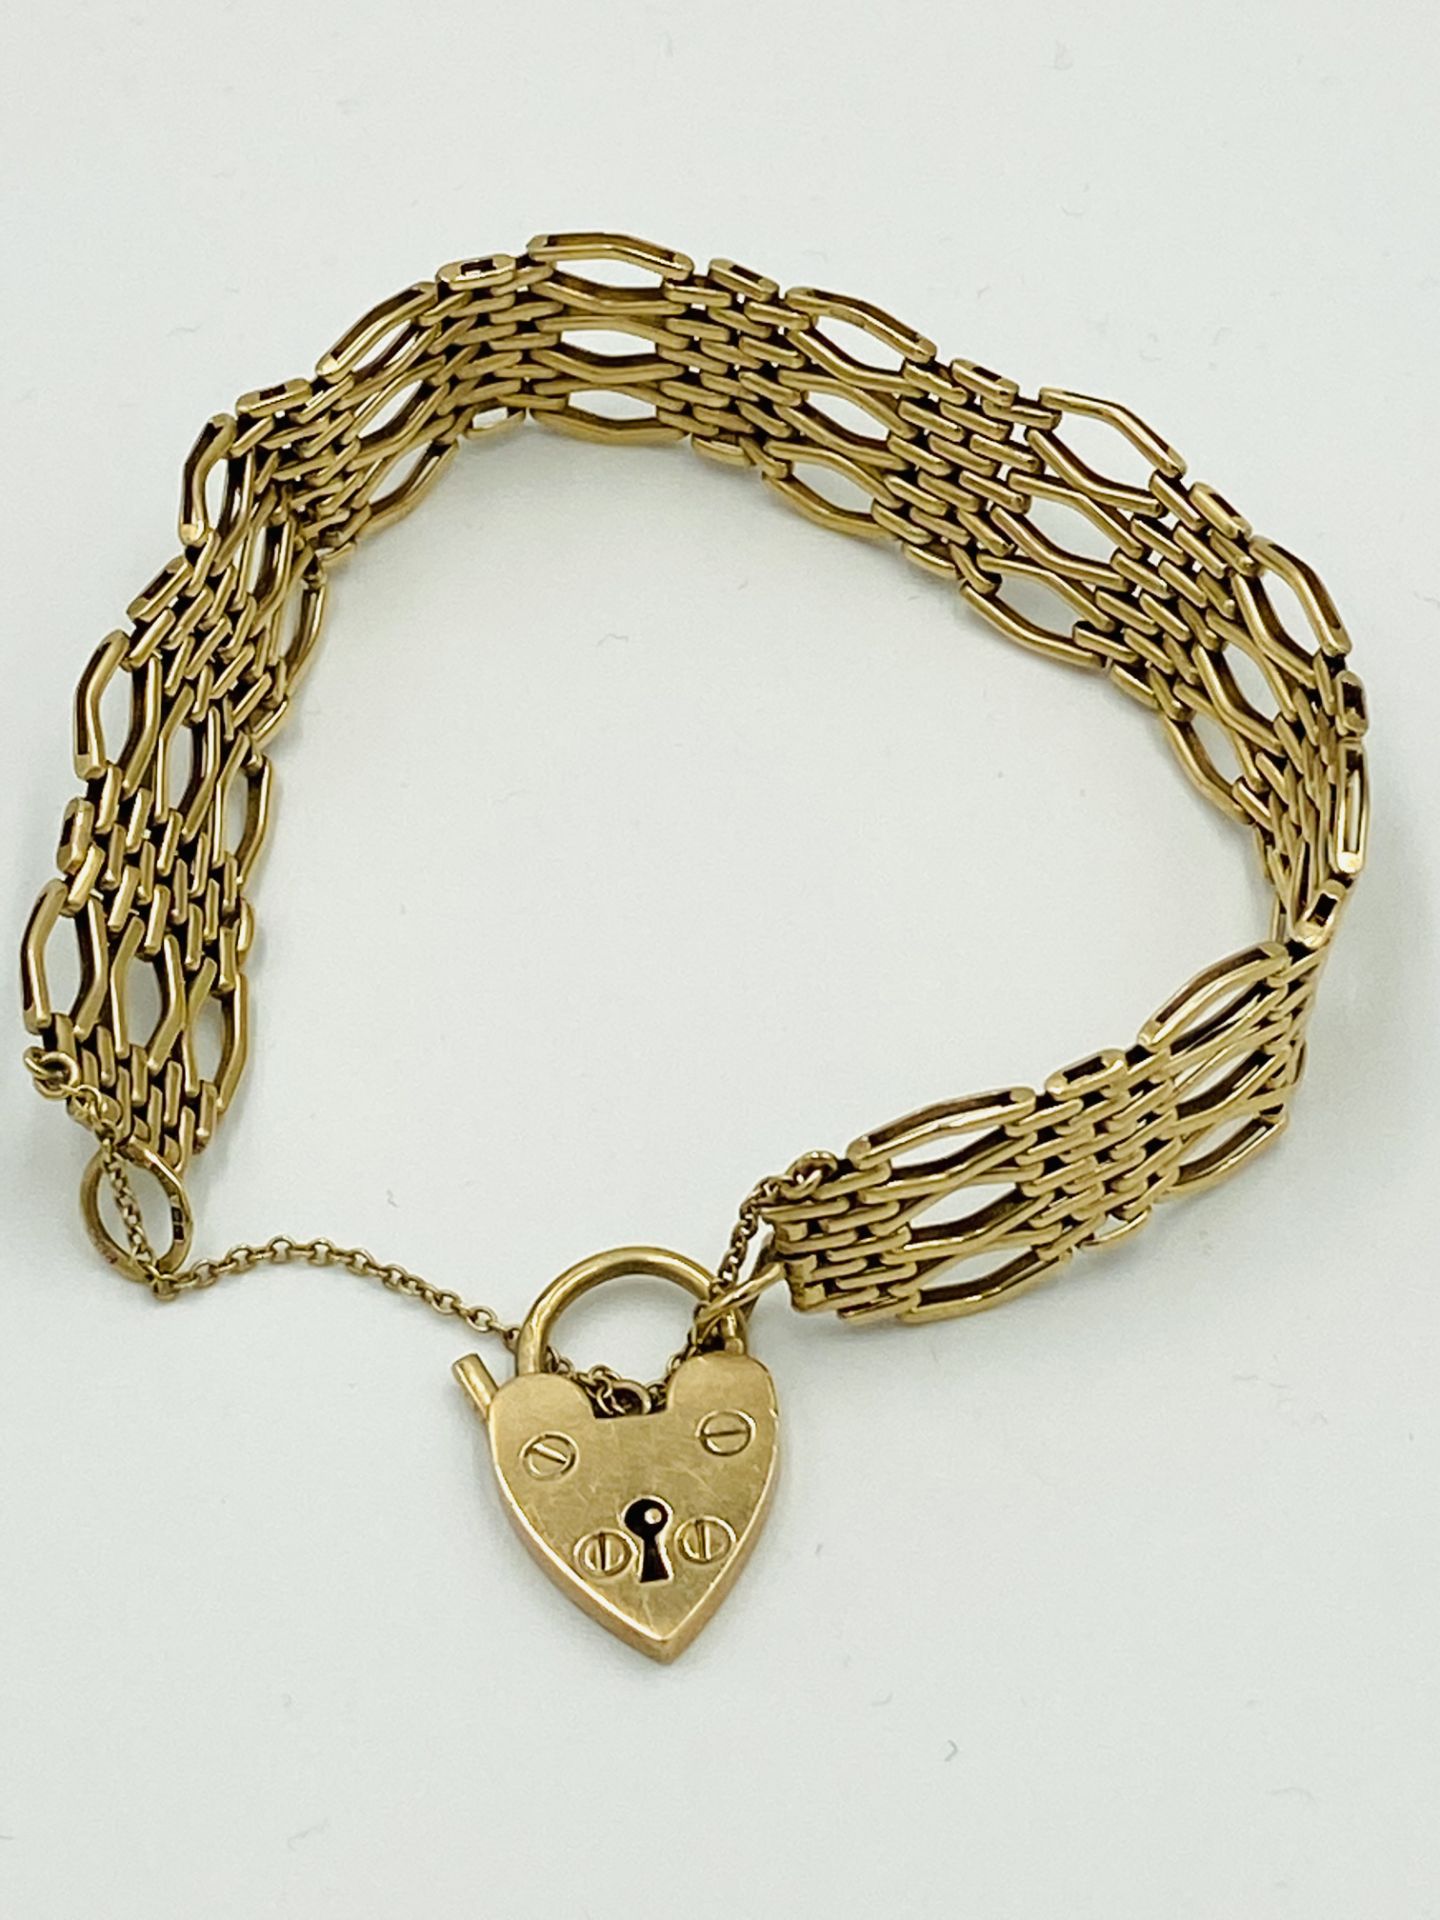 9ct gold gate bracelet - Image 3 of 5